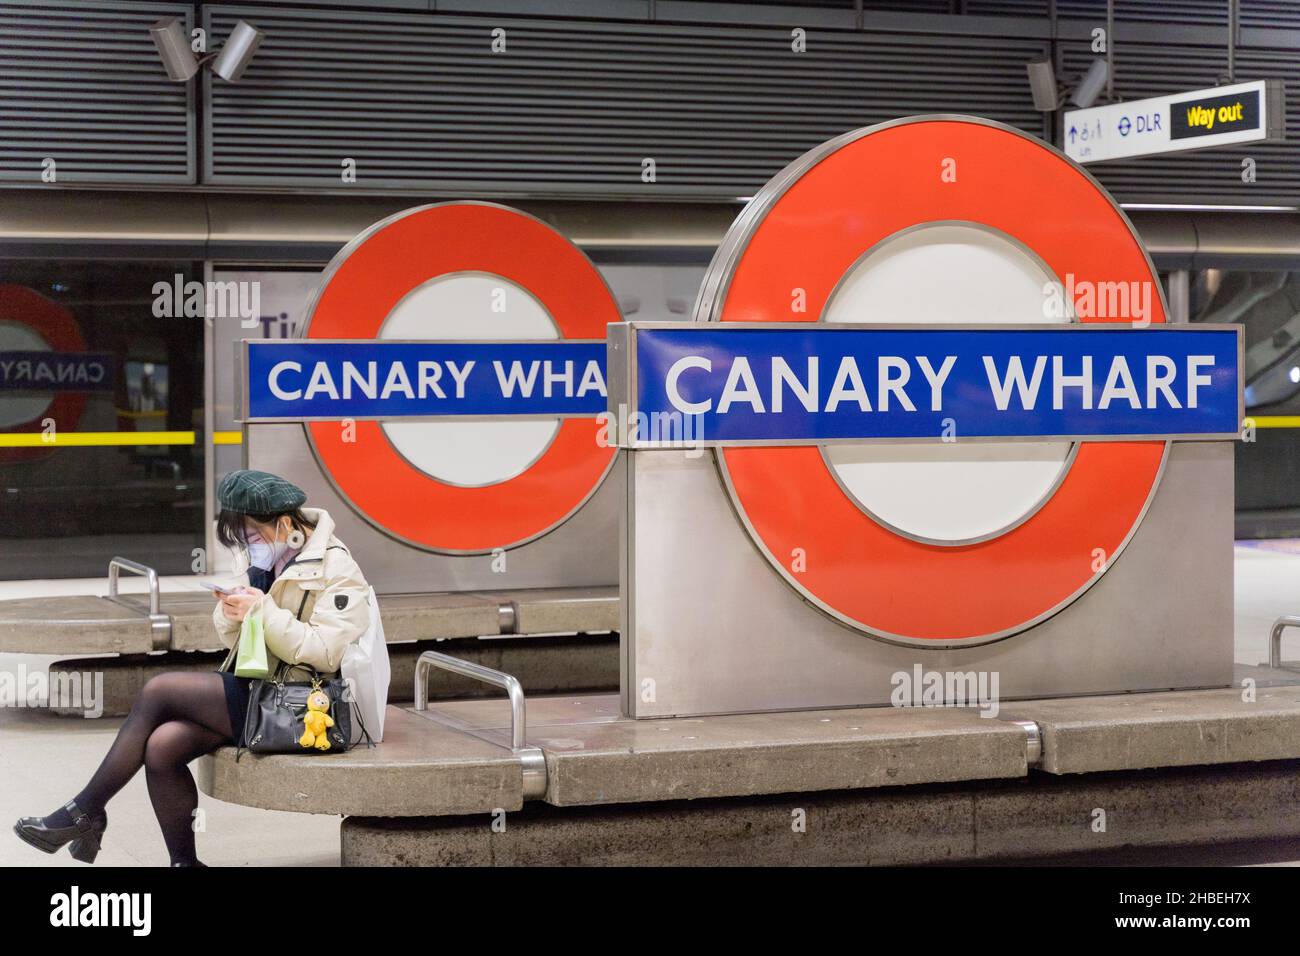 Une femme passager en tube masque portant un chapeau est assise sur le banc de la station en attendant son train à la station de métro Canary Wharf London Angleterre Royaume-Uni Banque D'Images